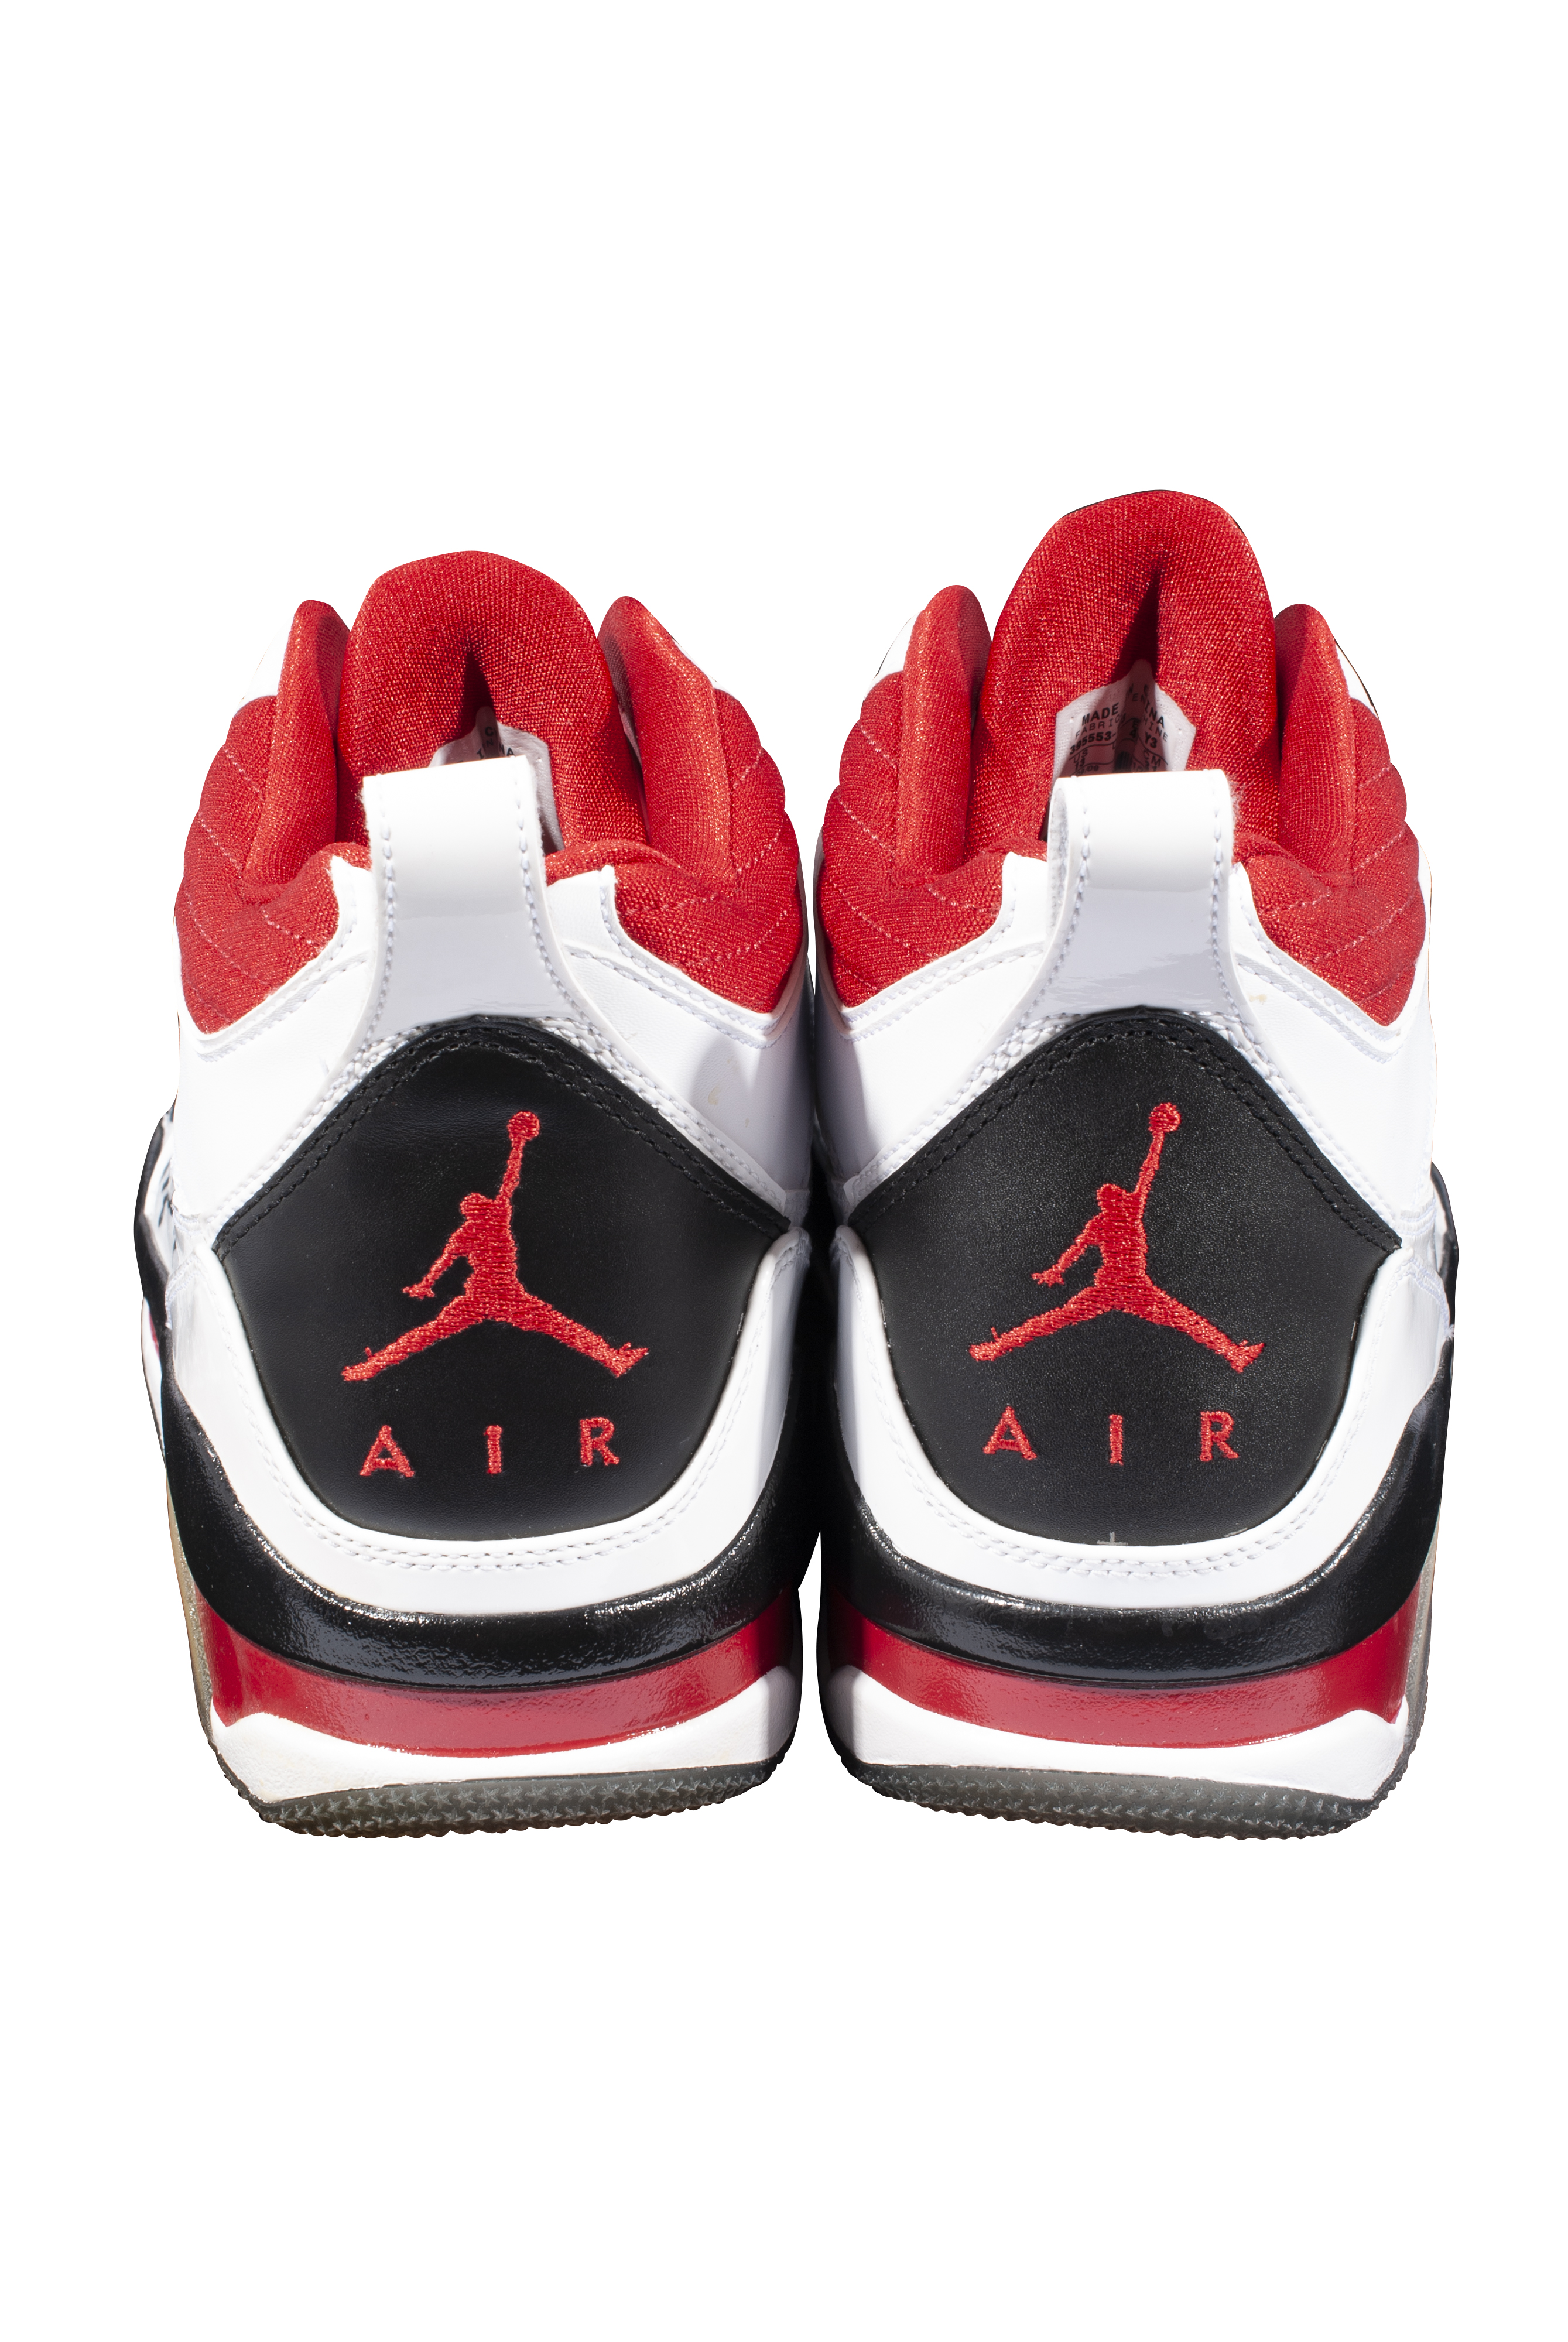 michael jordan flight shoes